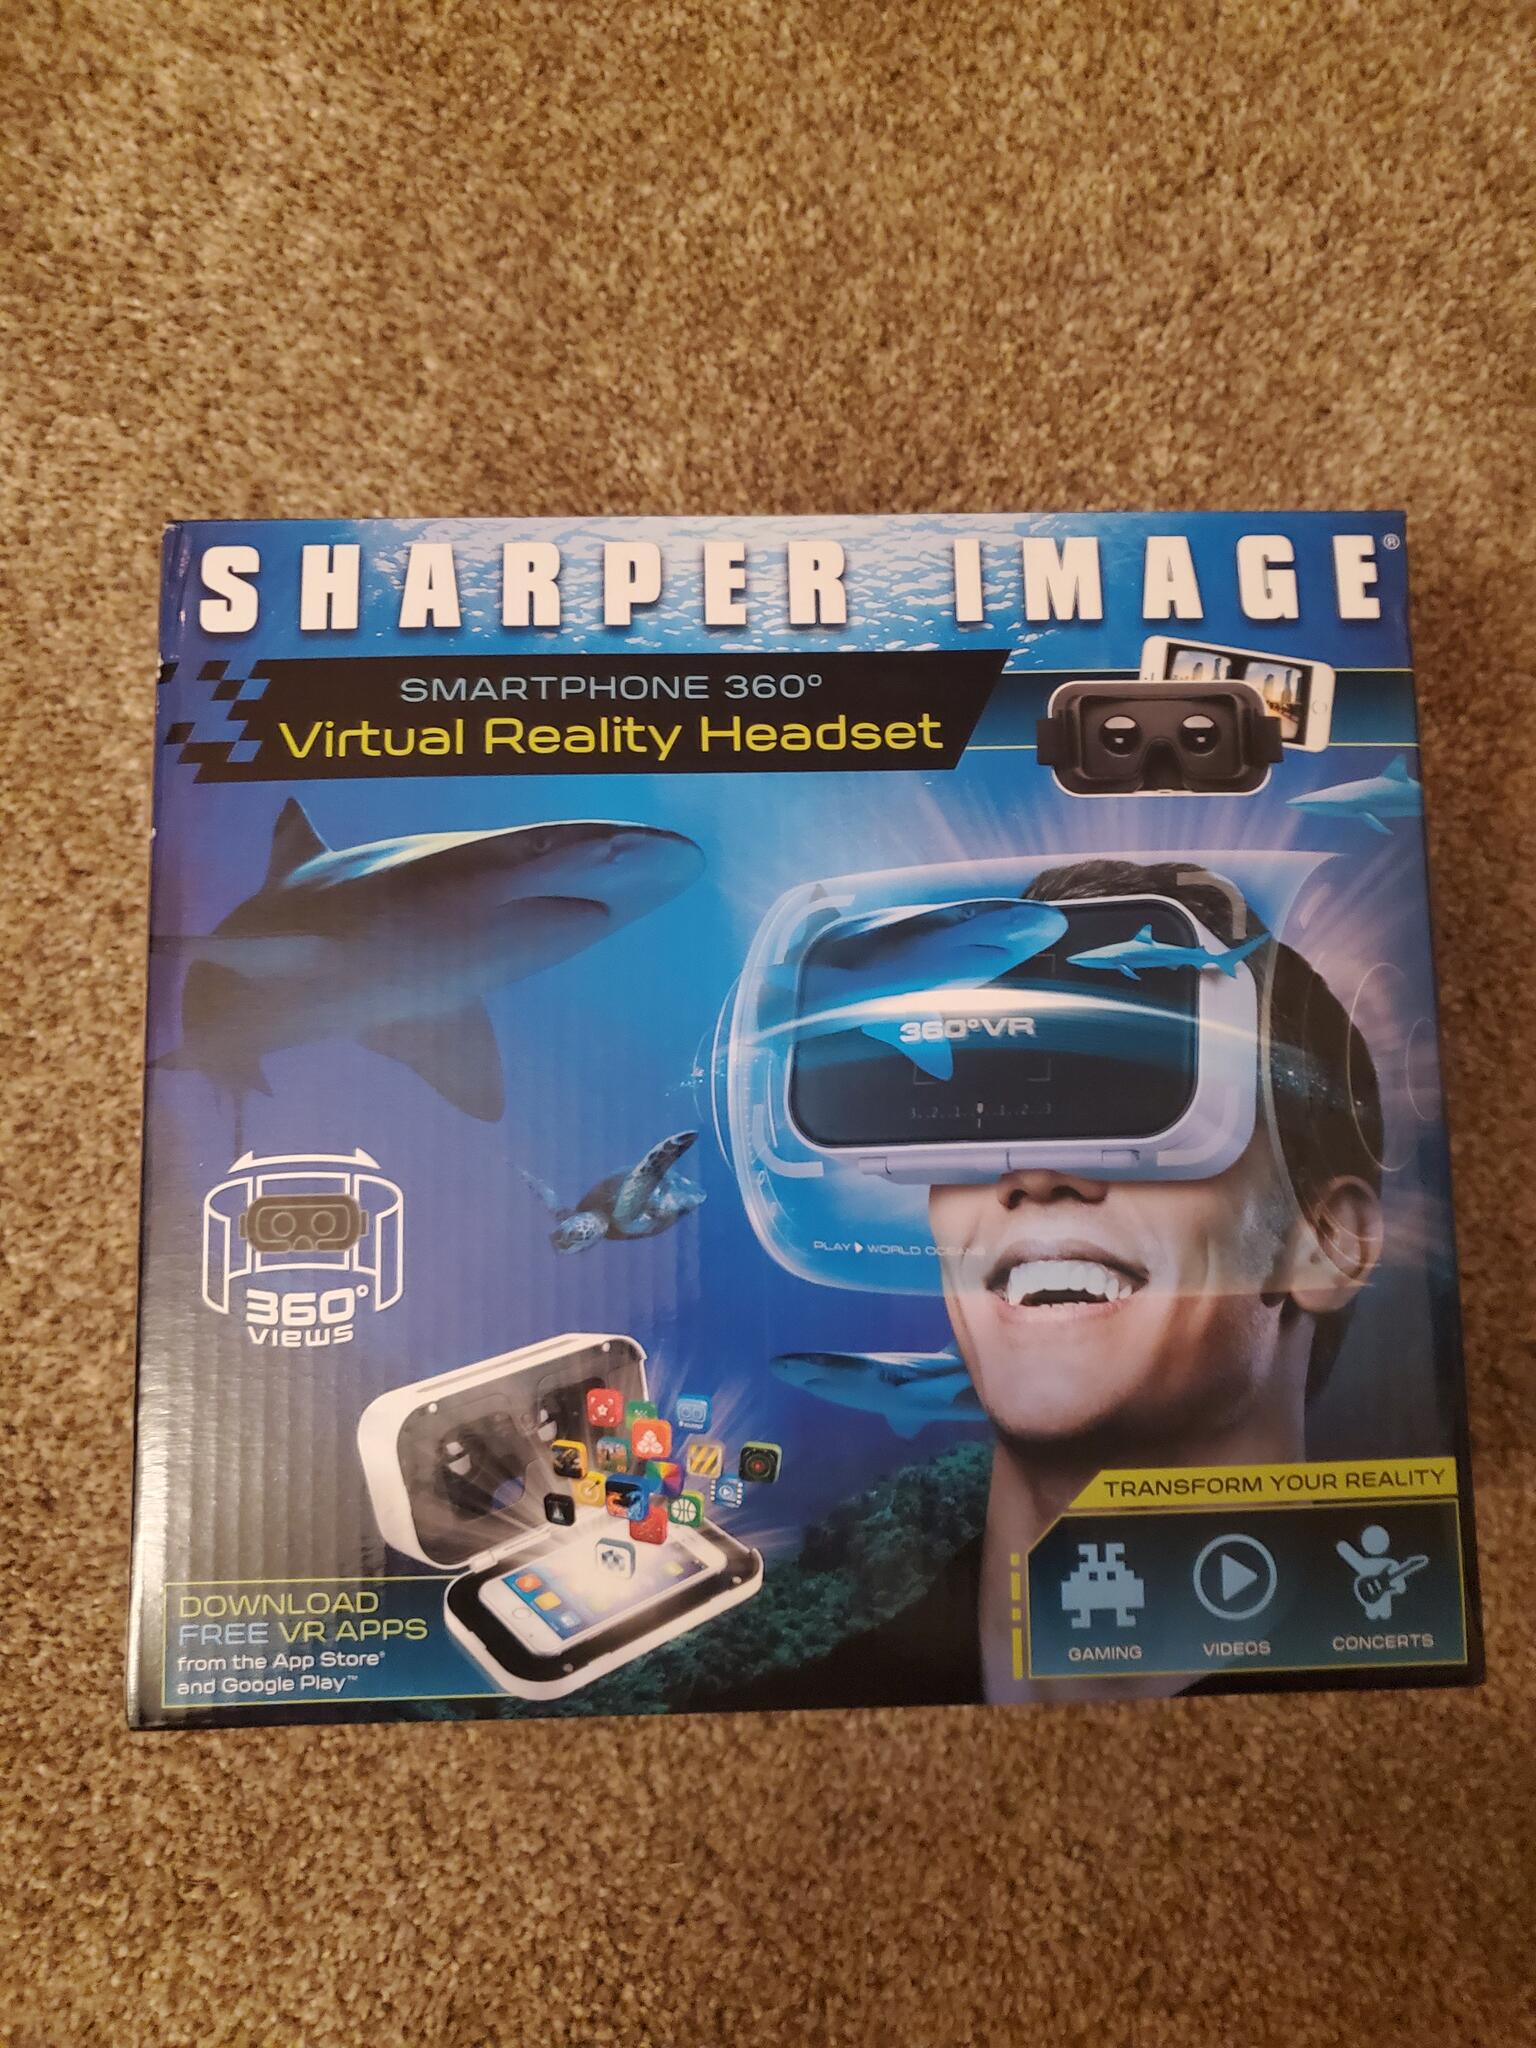 sharper image vr headset apps